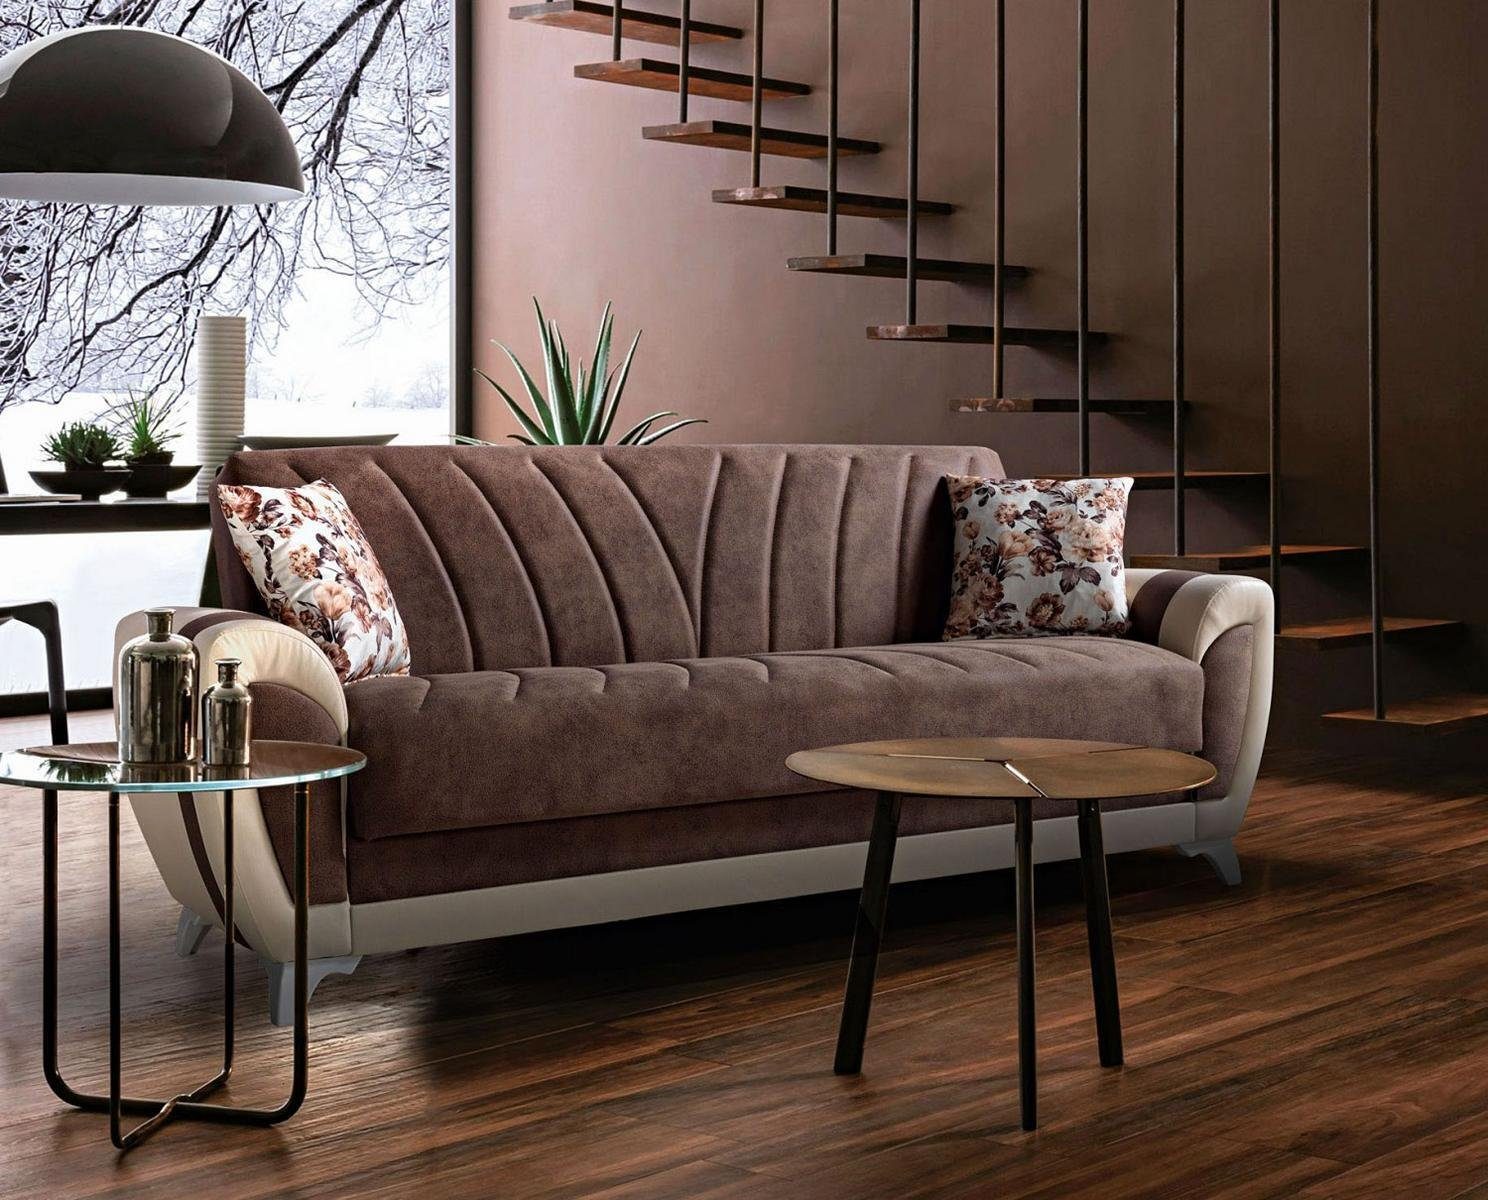 JVmoebel Sofa Europe Luxuriöses Sofa Luxus, Modern Sitzer Sofa Wohnzimmer Made 225cm Relax In 3